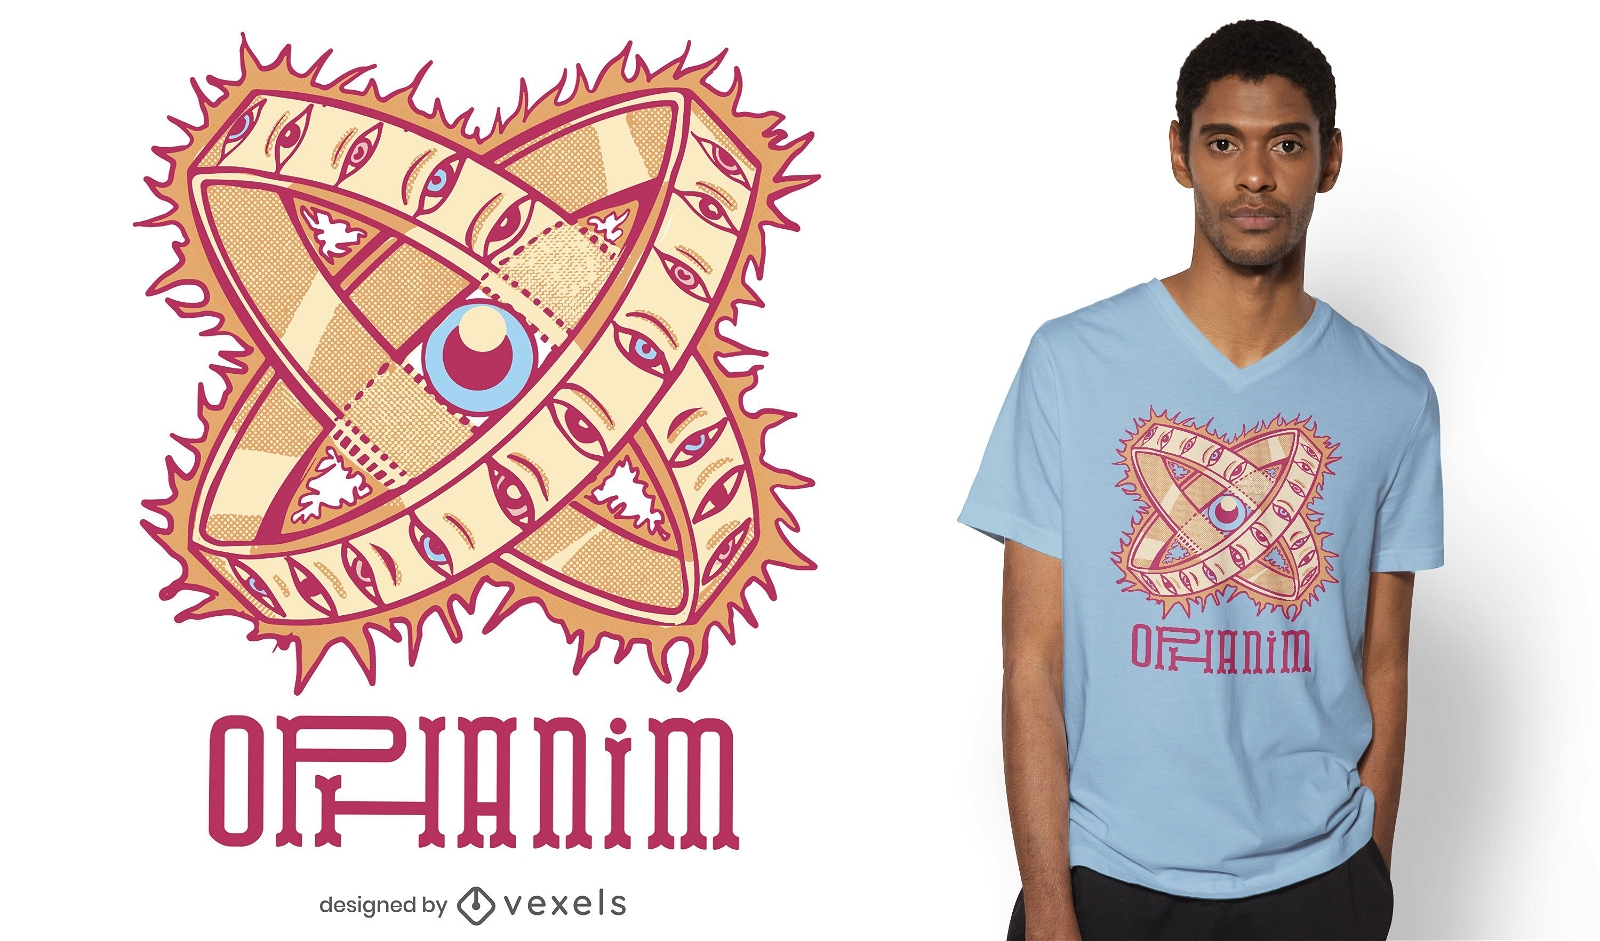 Ophanim t-shirt design